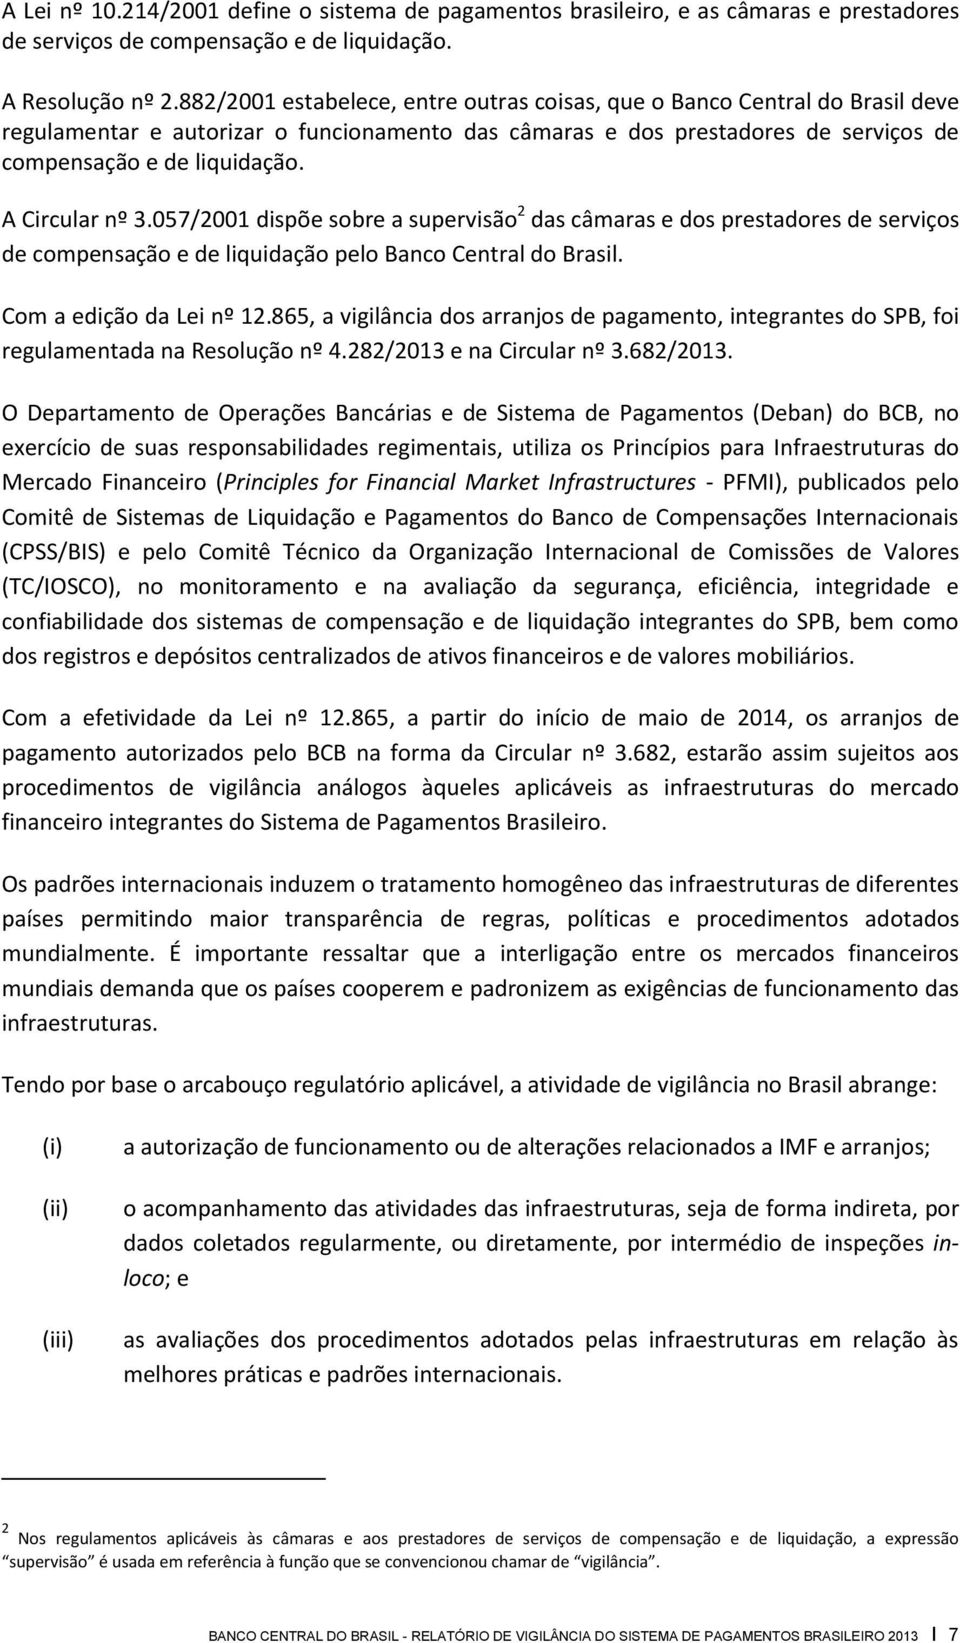 A Circular nº 3.057/2001 dispõe sobre a supervisão 2 das câmaras e dos prestadores de serviços de compensação e de liquidação pelo Banco Central do Brasil. Com a edição da Lei nº 12.